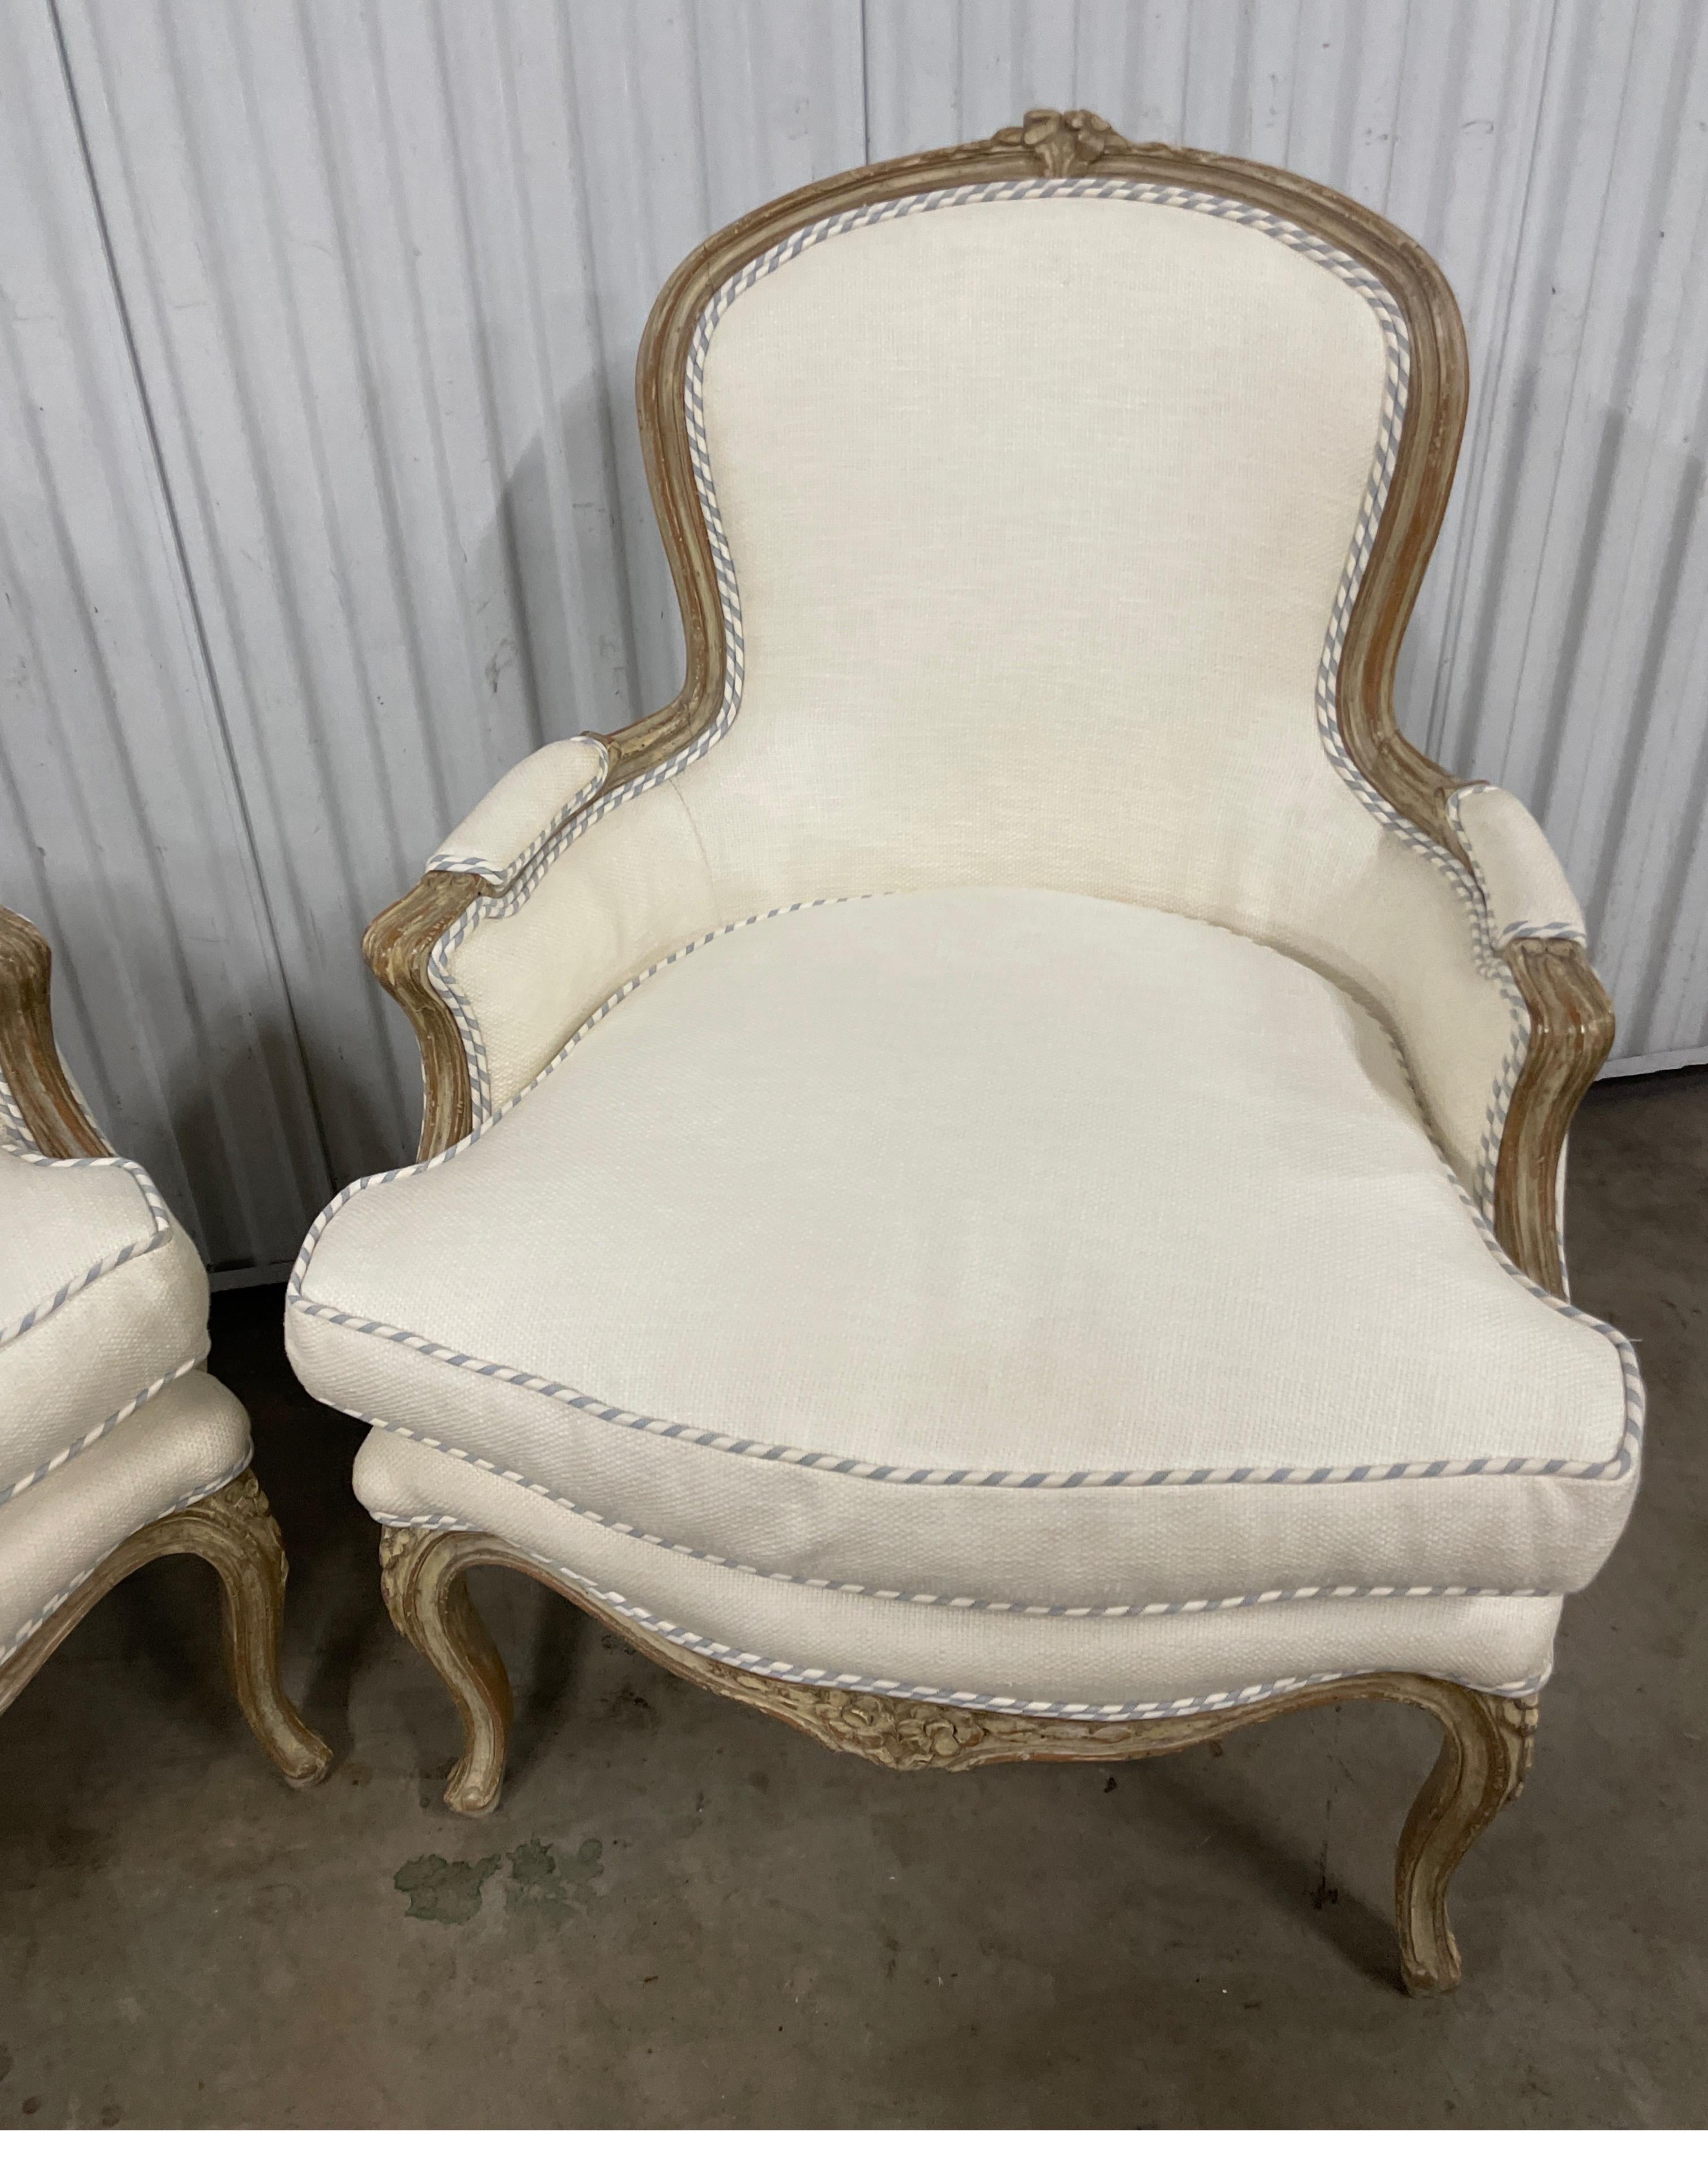 Sehr schickes Paar französischer Bergere-Stühle aus dem 19. Jahrhundert, gepolstert mit einem weißen Baumwoll-/Leinenstoff mit blau-weißem Inlett und Rückenlehnen. Die Rahmen sind leicht gekalkt.